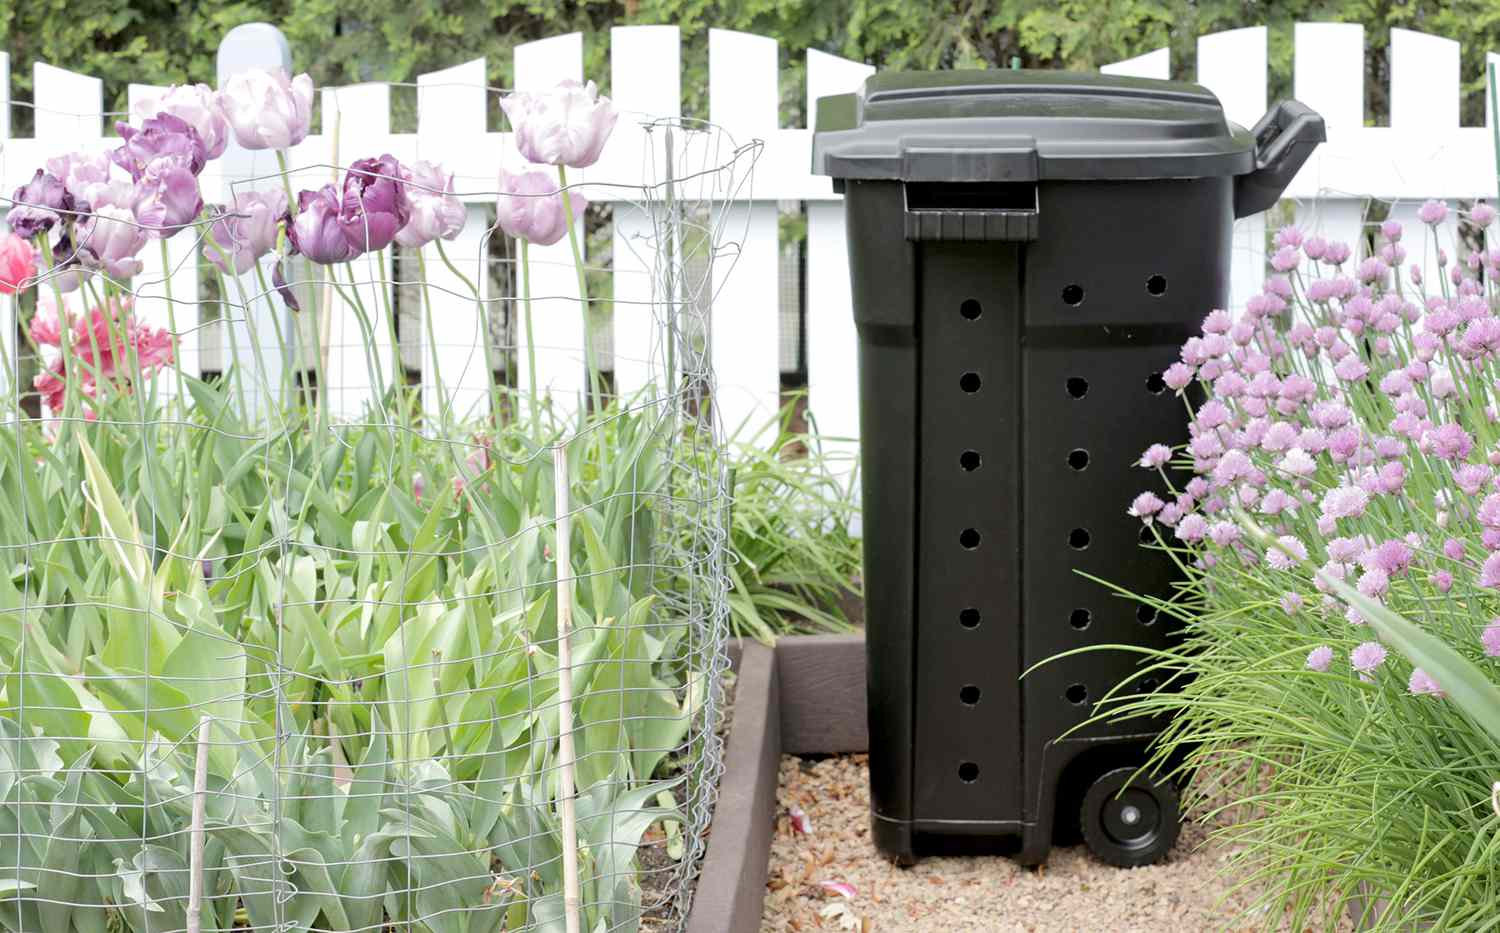 Compost bin sitting in flower garden